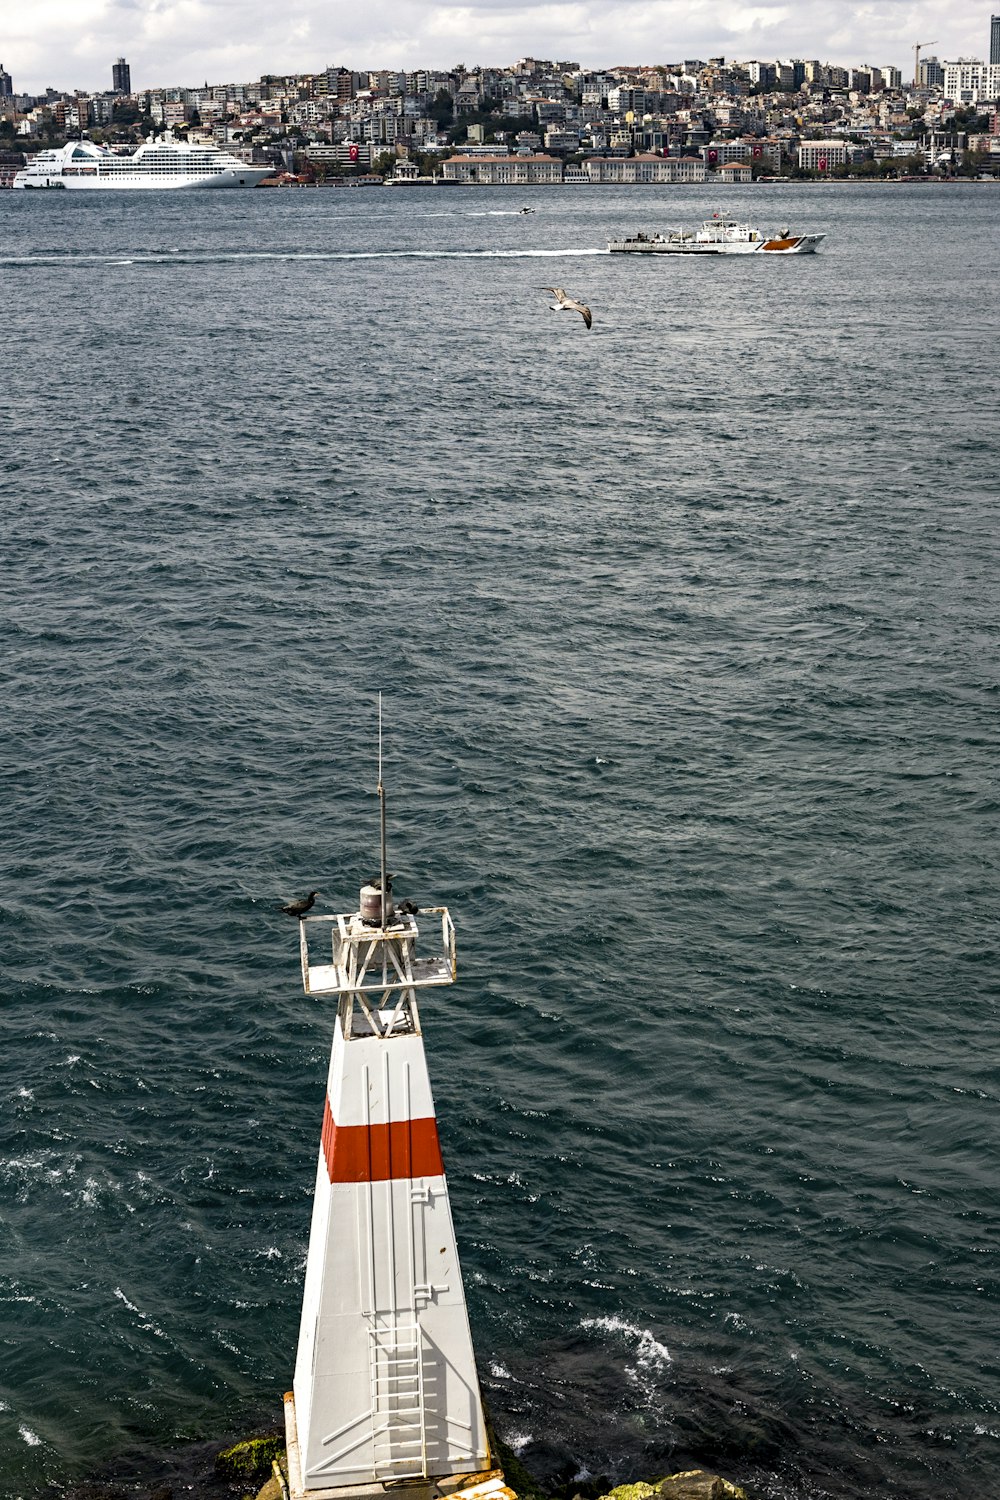 Torre de vigilancia blanca y roja junto al cuerpo de agua